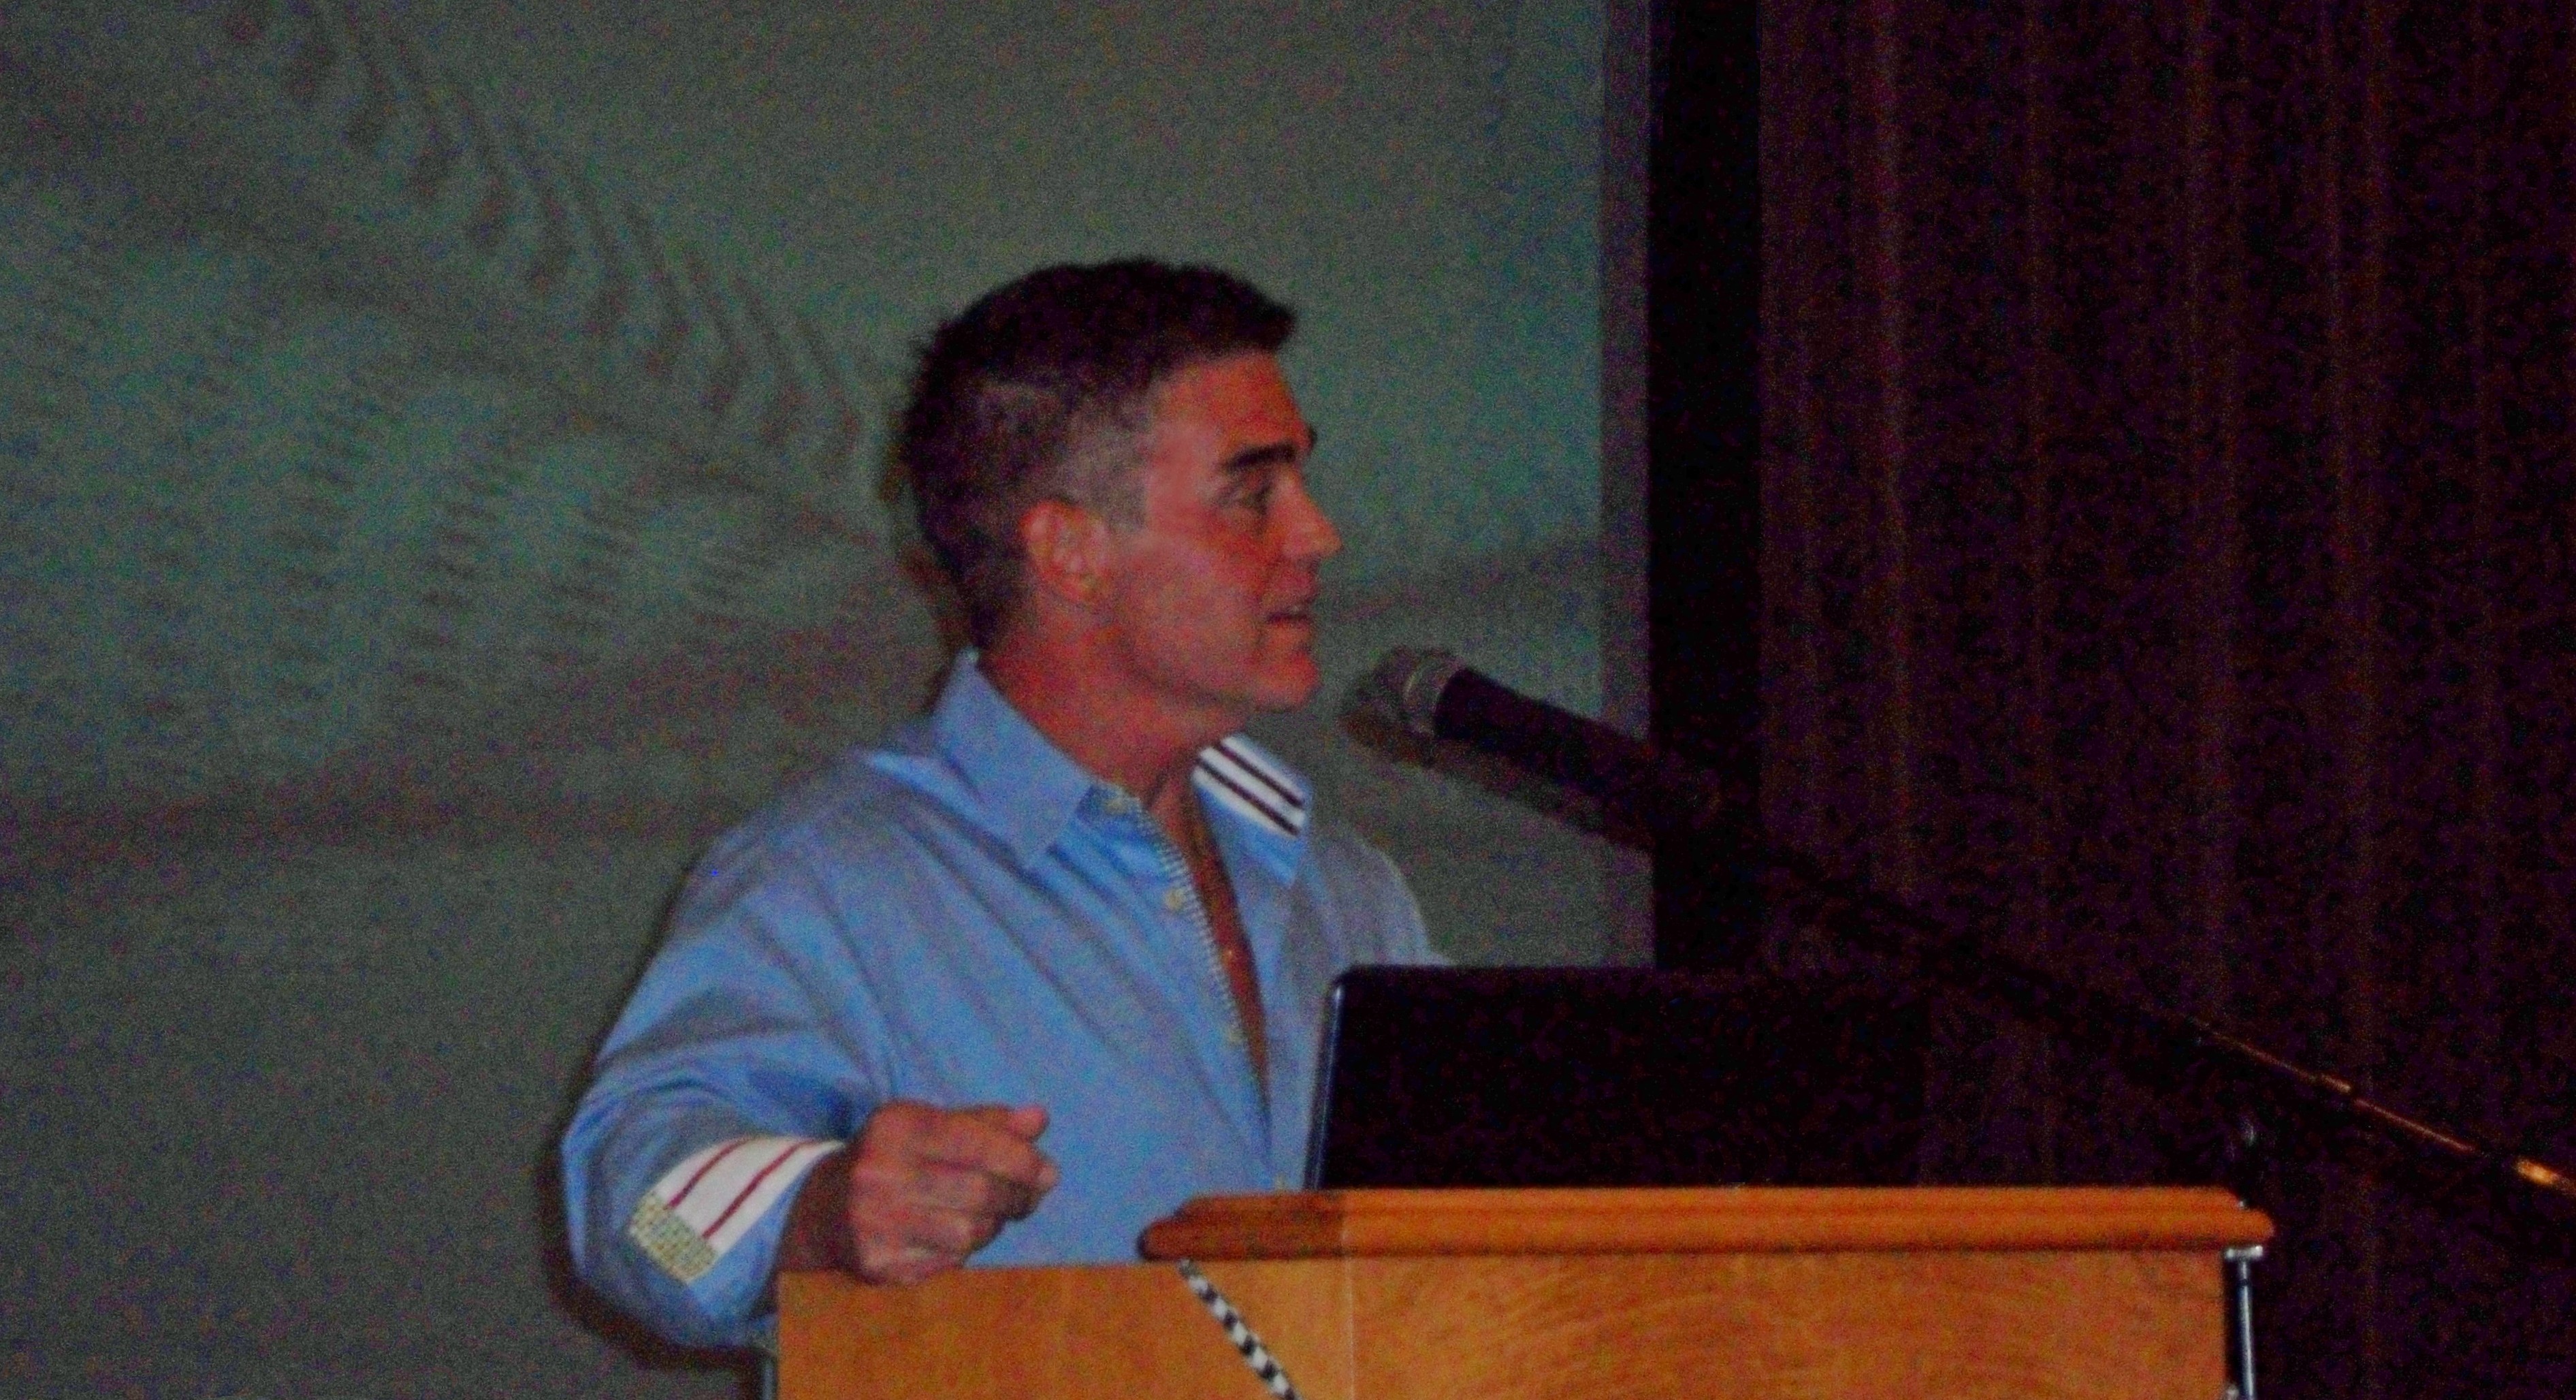 June 2014 - Keynote Speaker at The Villages Motor Racing Fan Club in Wildwood, FL